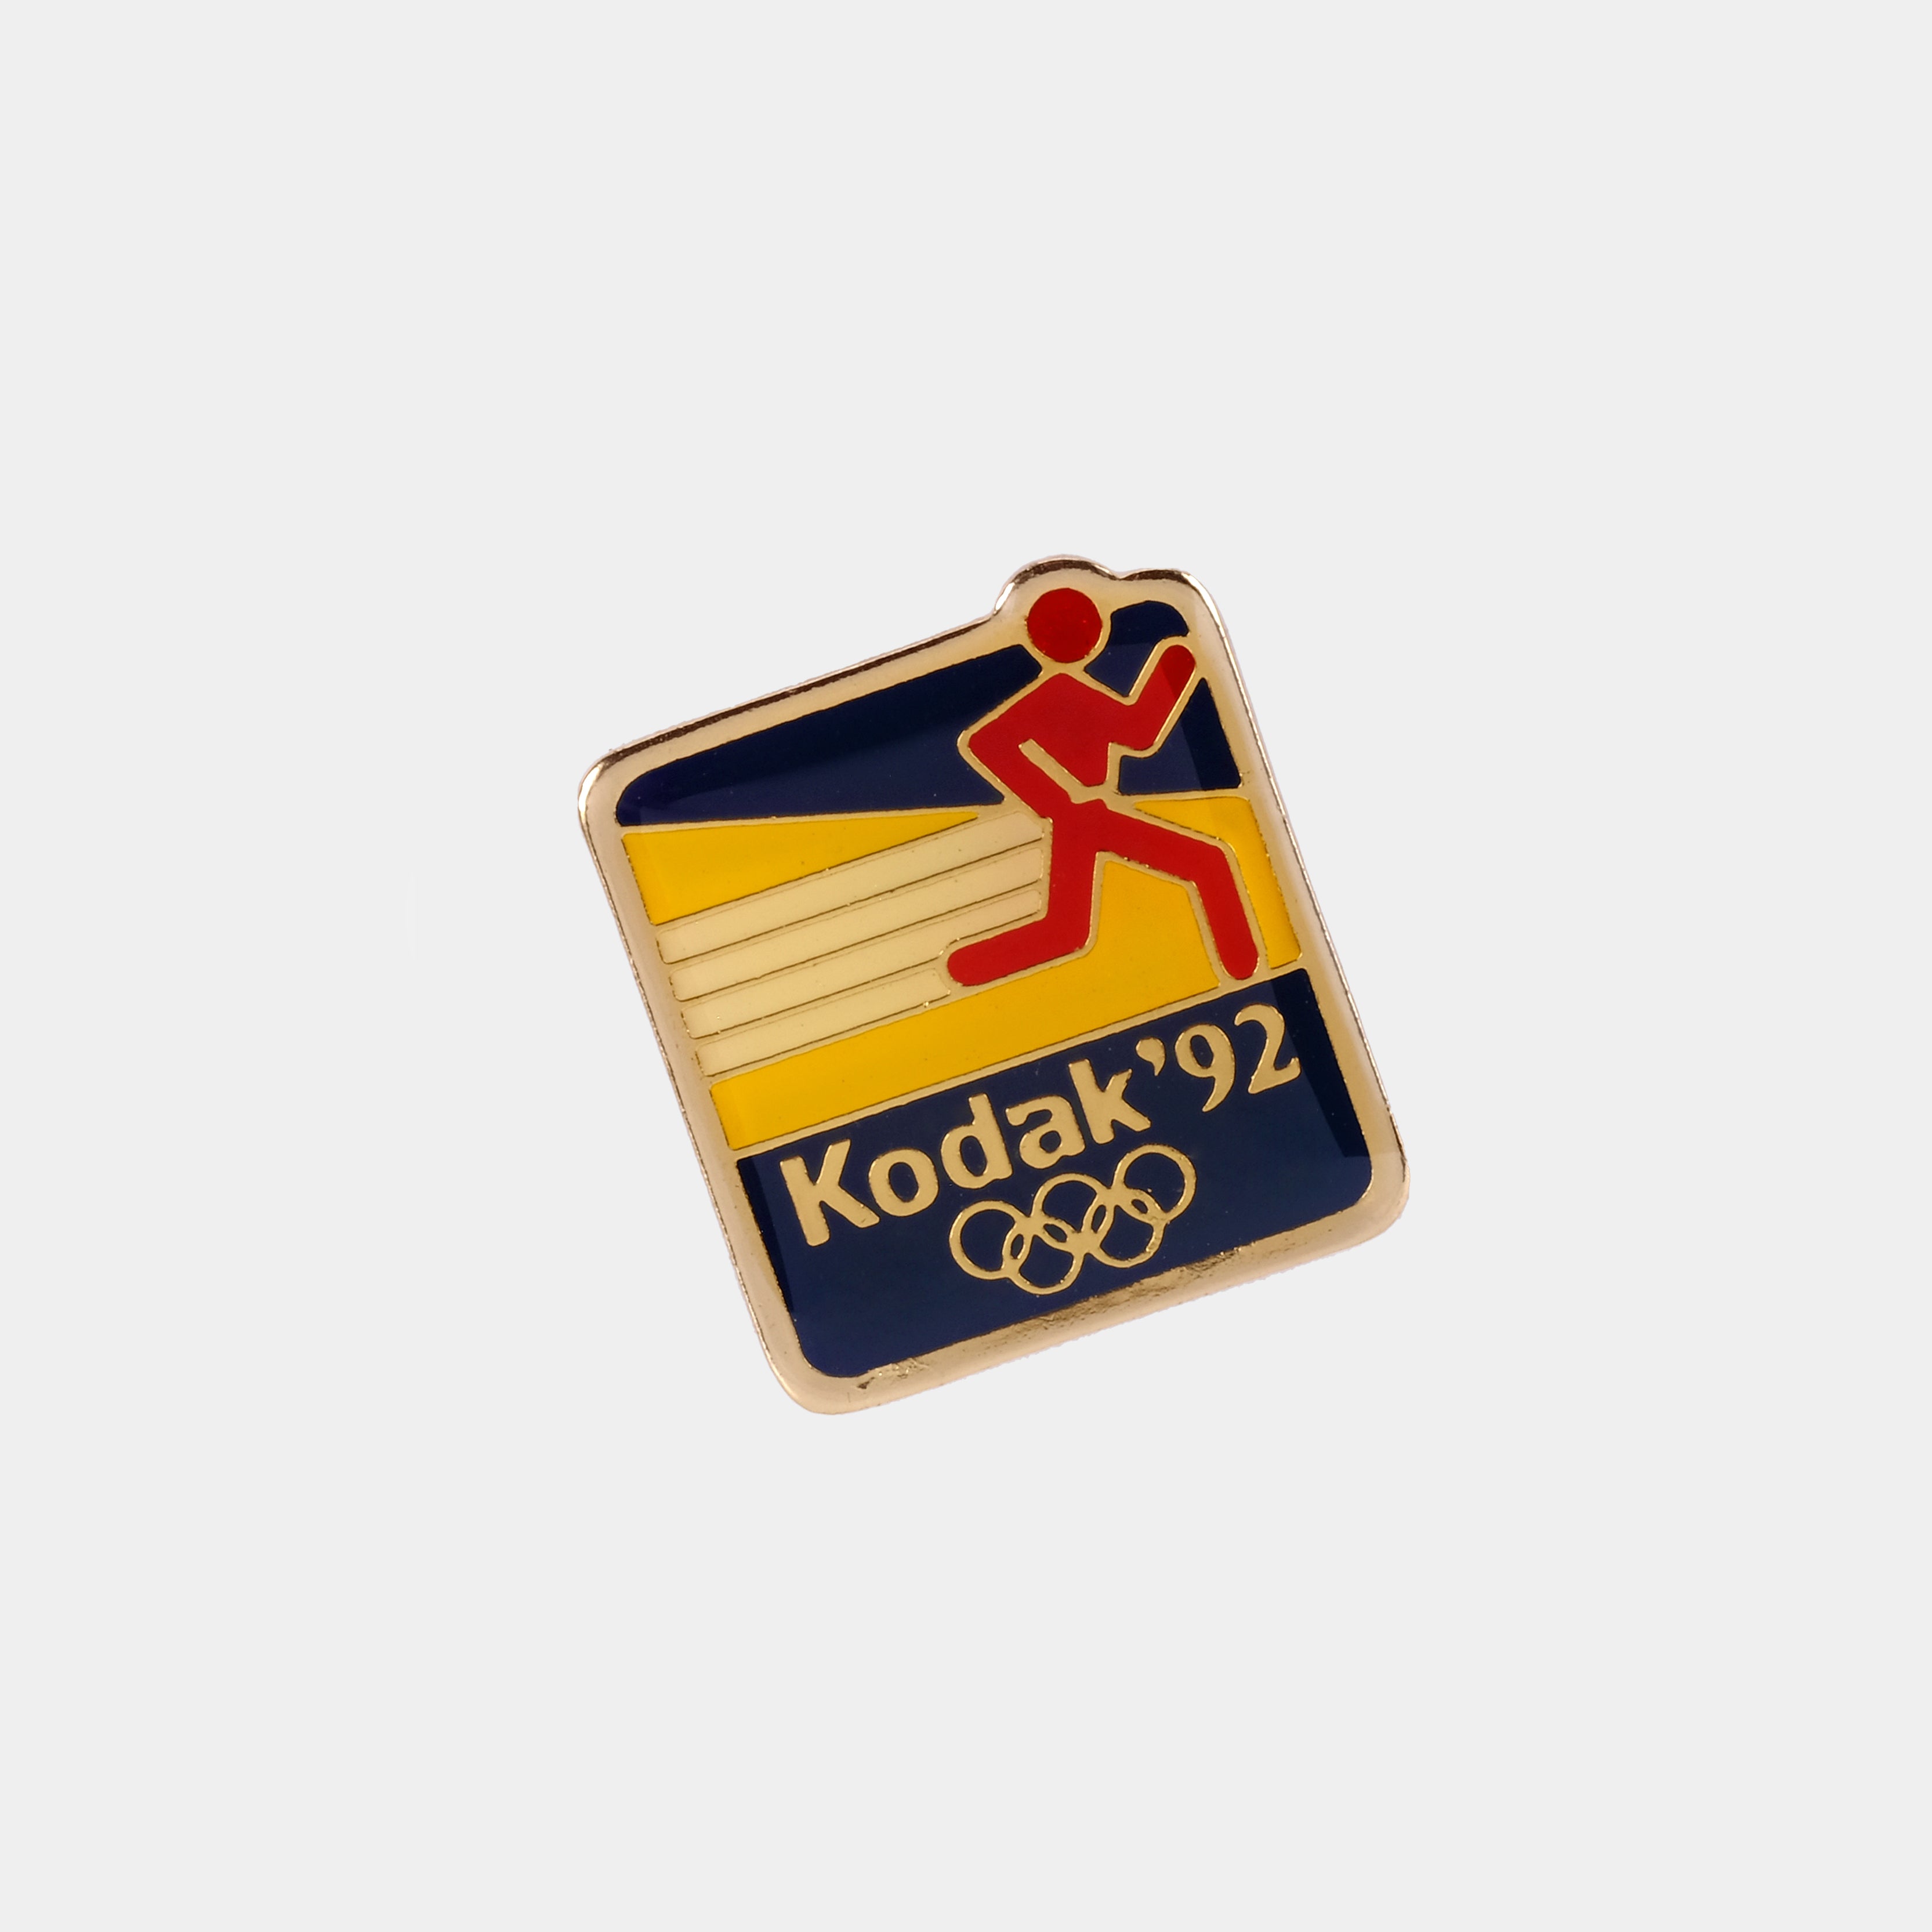 Kodak 1992 Olympics Vintage Enamel Pin